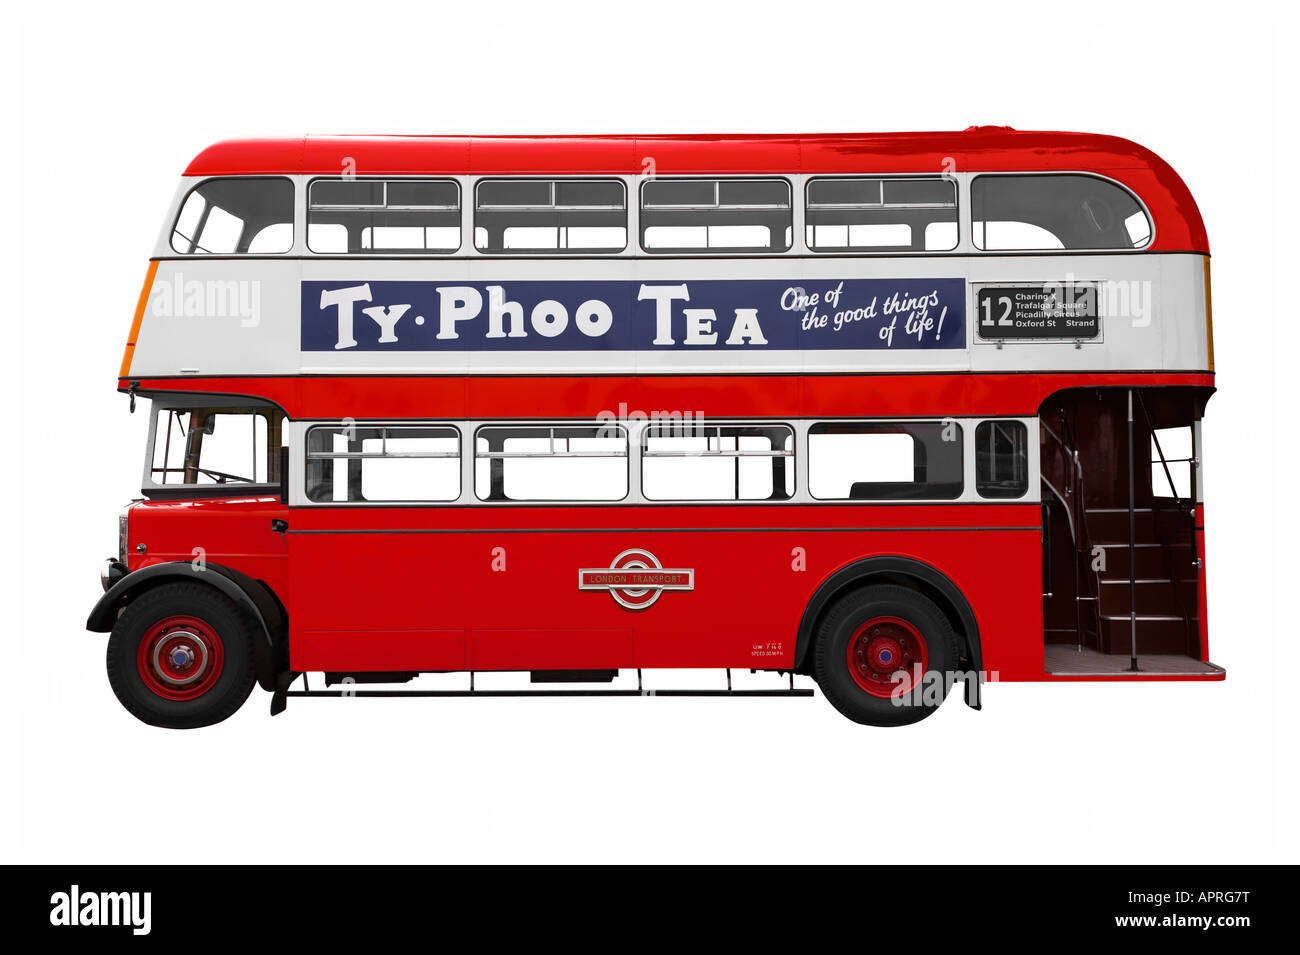 Vintage bus rosso a due piani isolato su bianco mi hanno anche lo stesso autobus disponibili nella mia galery con senza branding su di esso Foto Stock